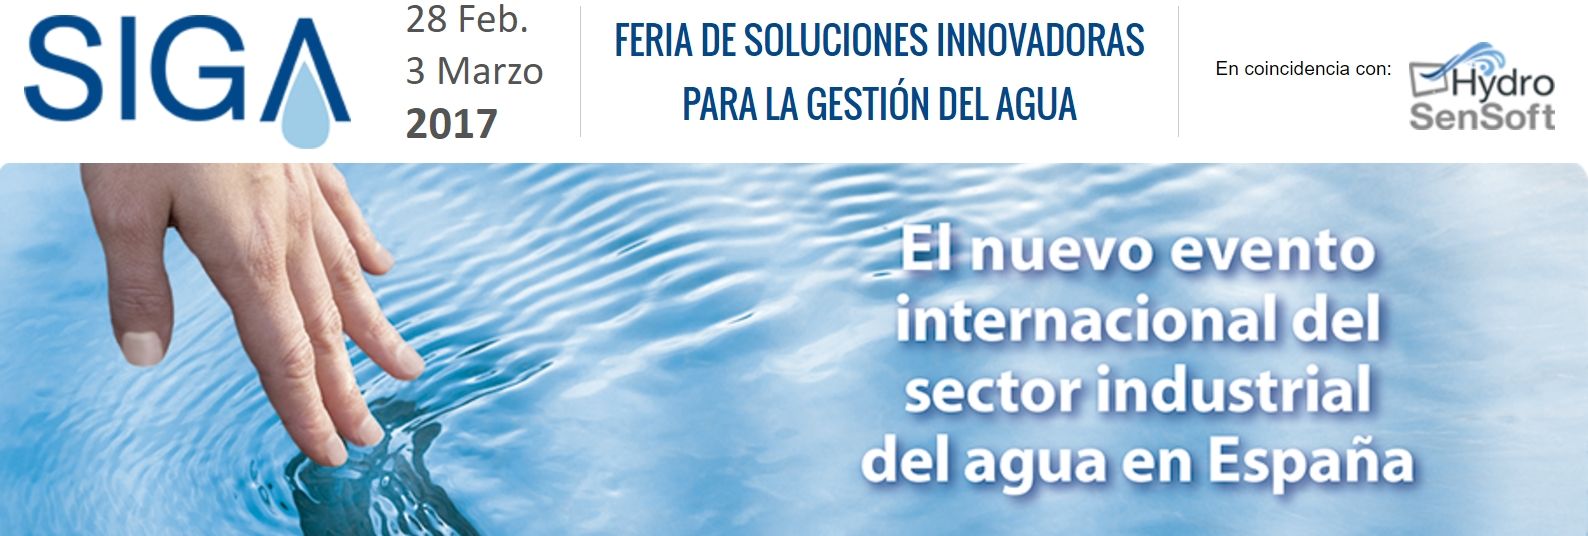 Simulaciones y Proyectos estará presente en la feria internacional del agua SIGA 2017 que se celebrará en Madrid en Marzo